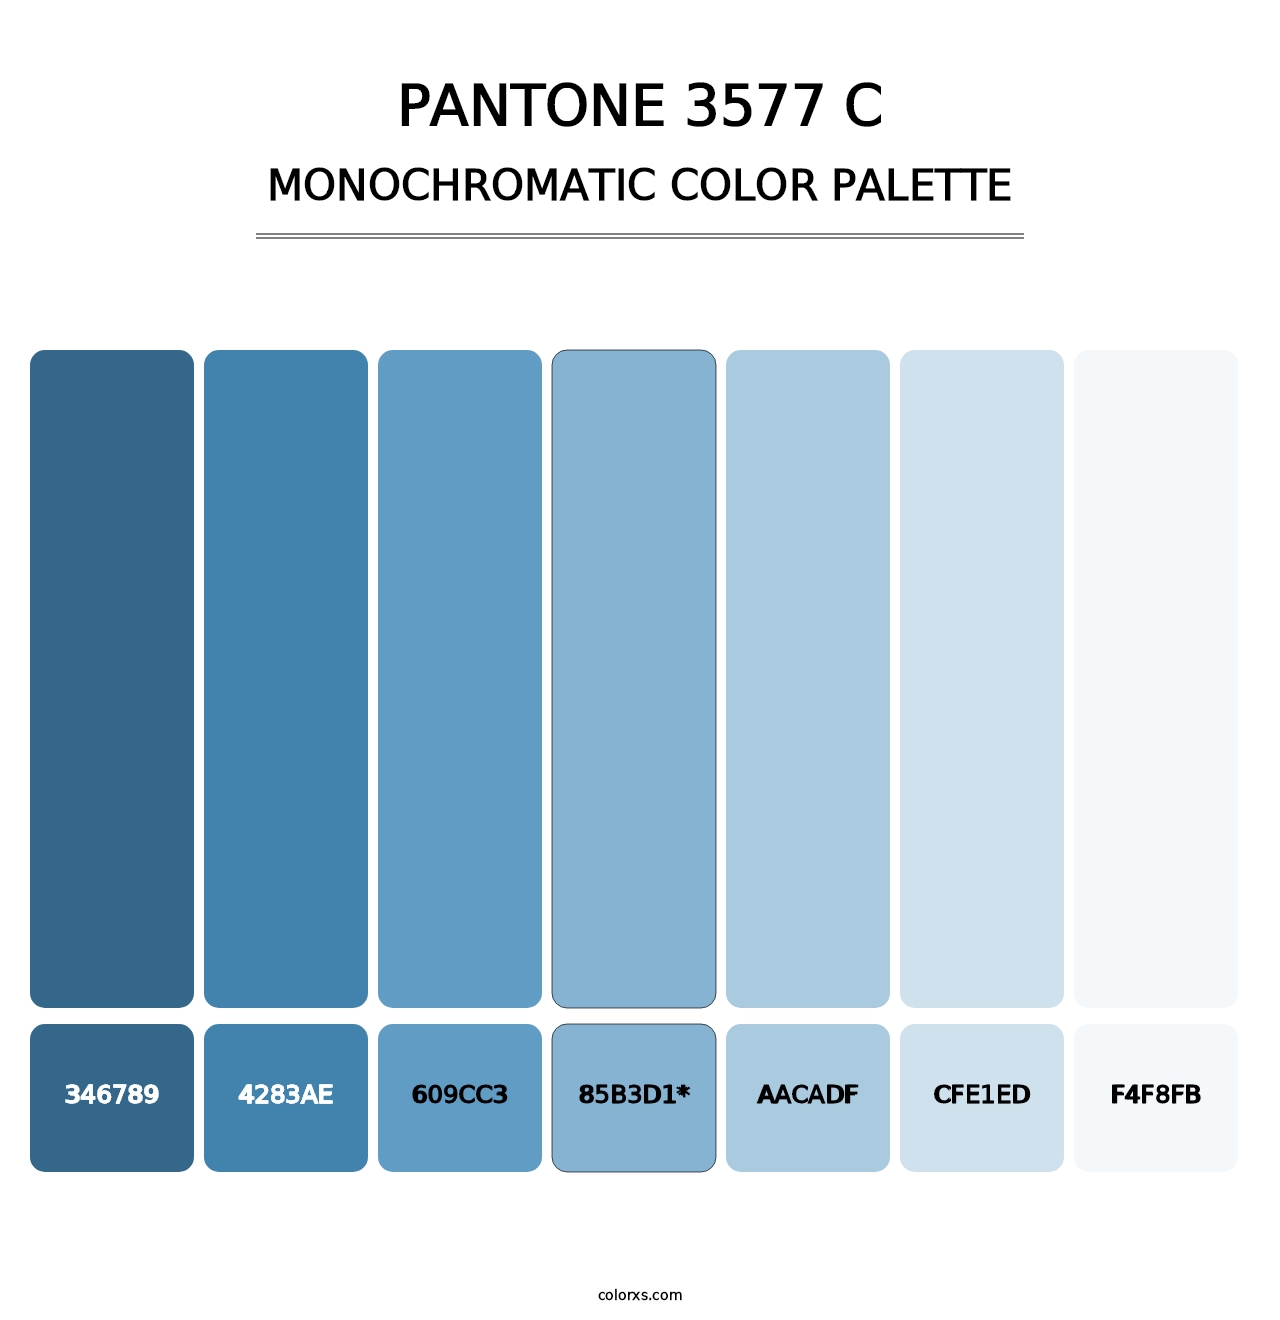 PANTONE 3577 C - Monochromatic Color Palette